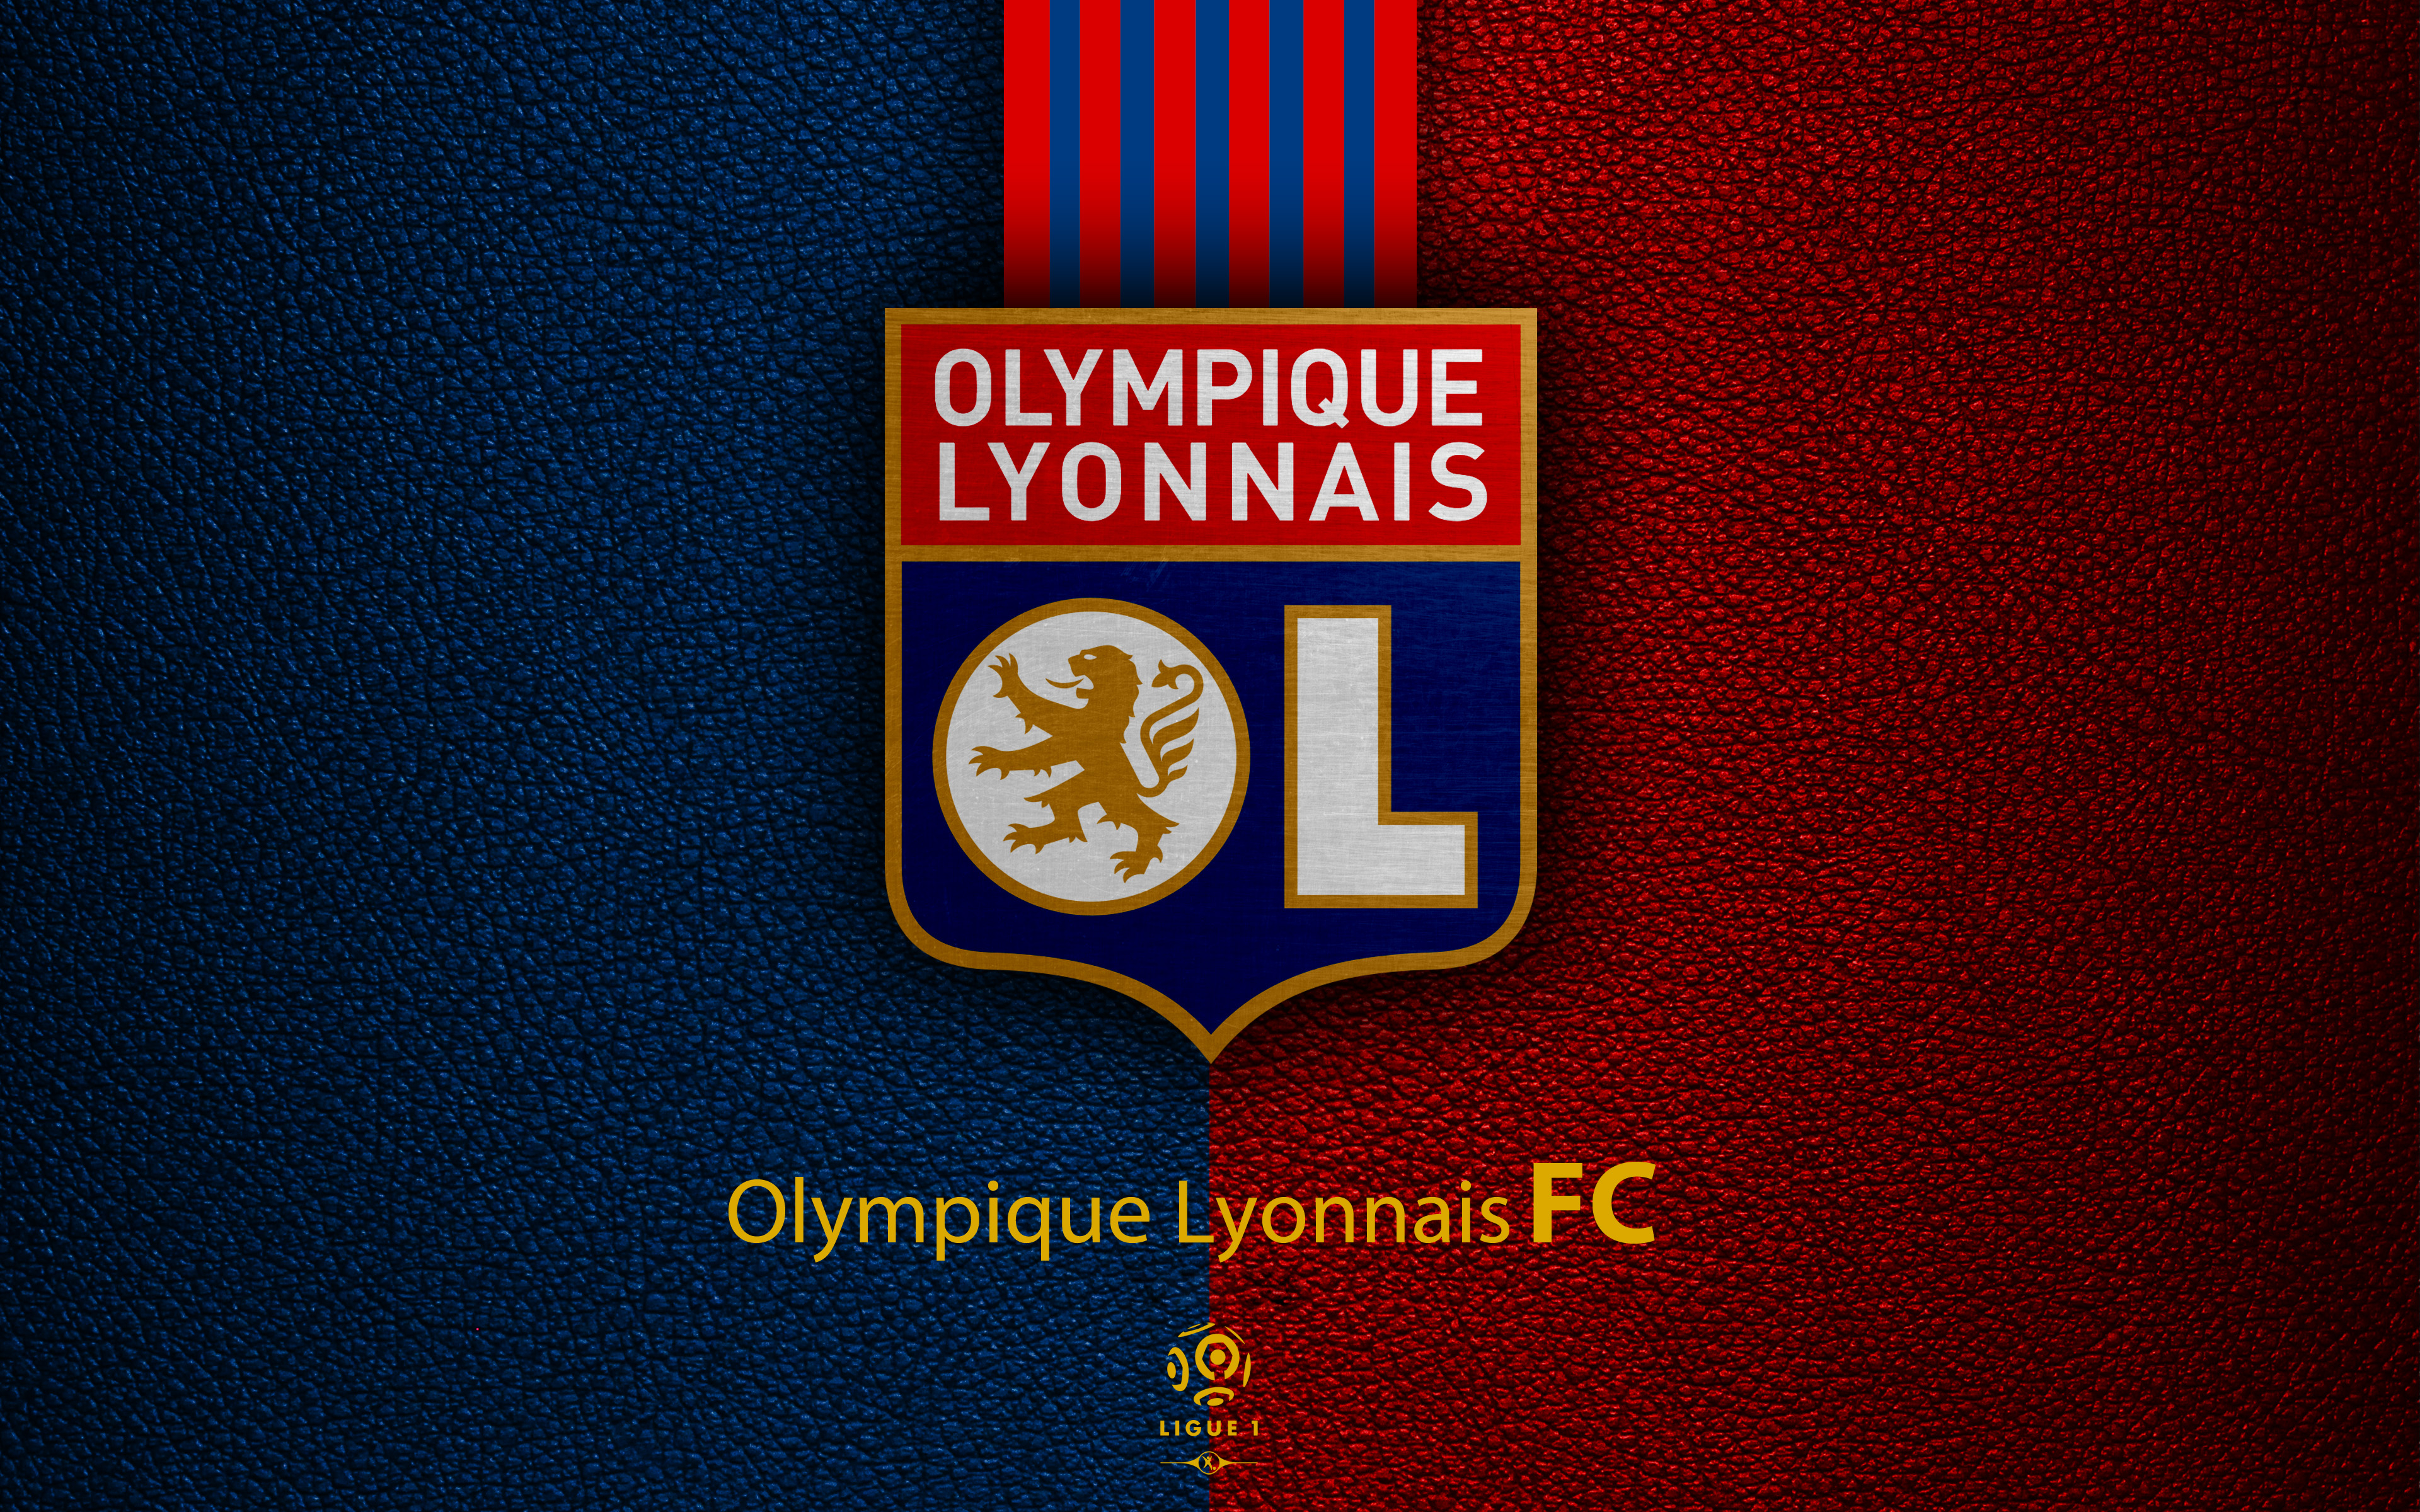 Los mejores fondos de pantalla de Olympique Lyonnais para la pantalla del teléfono